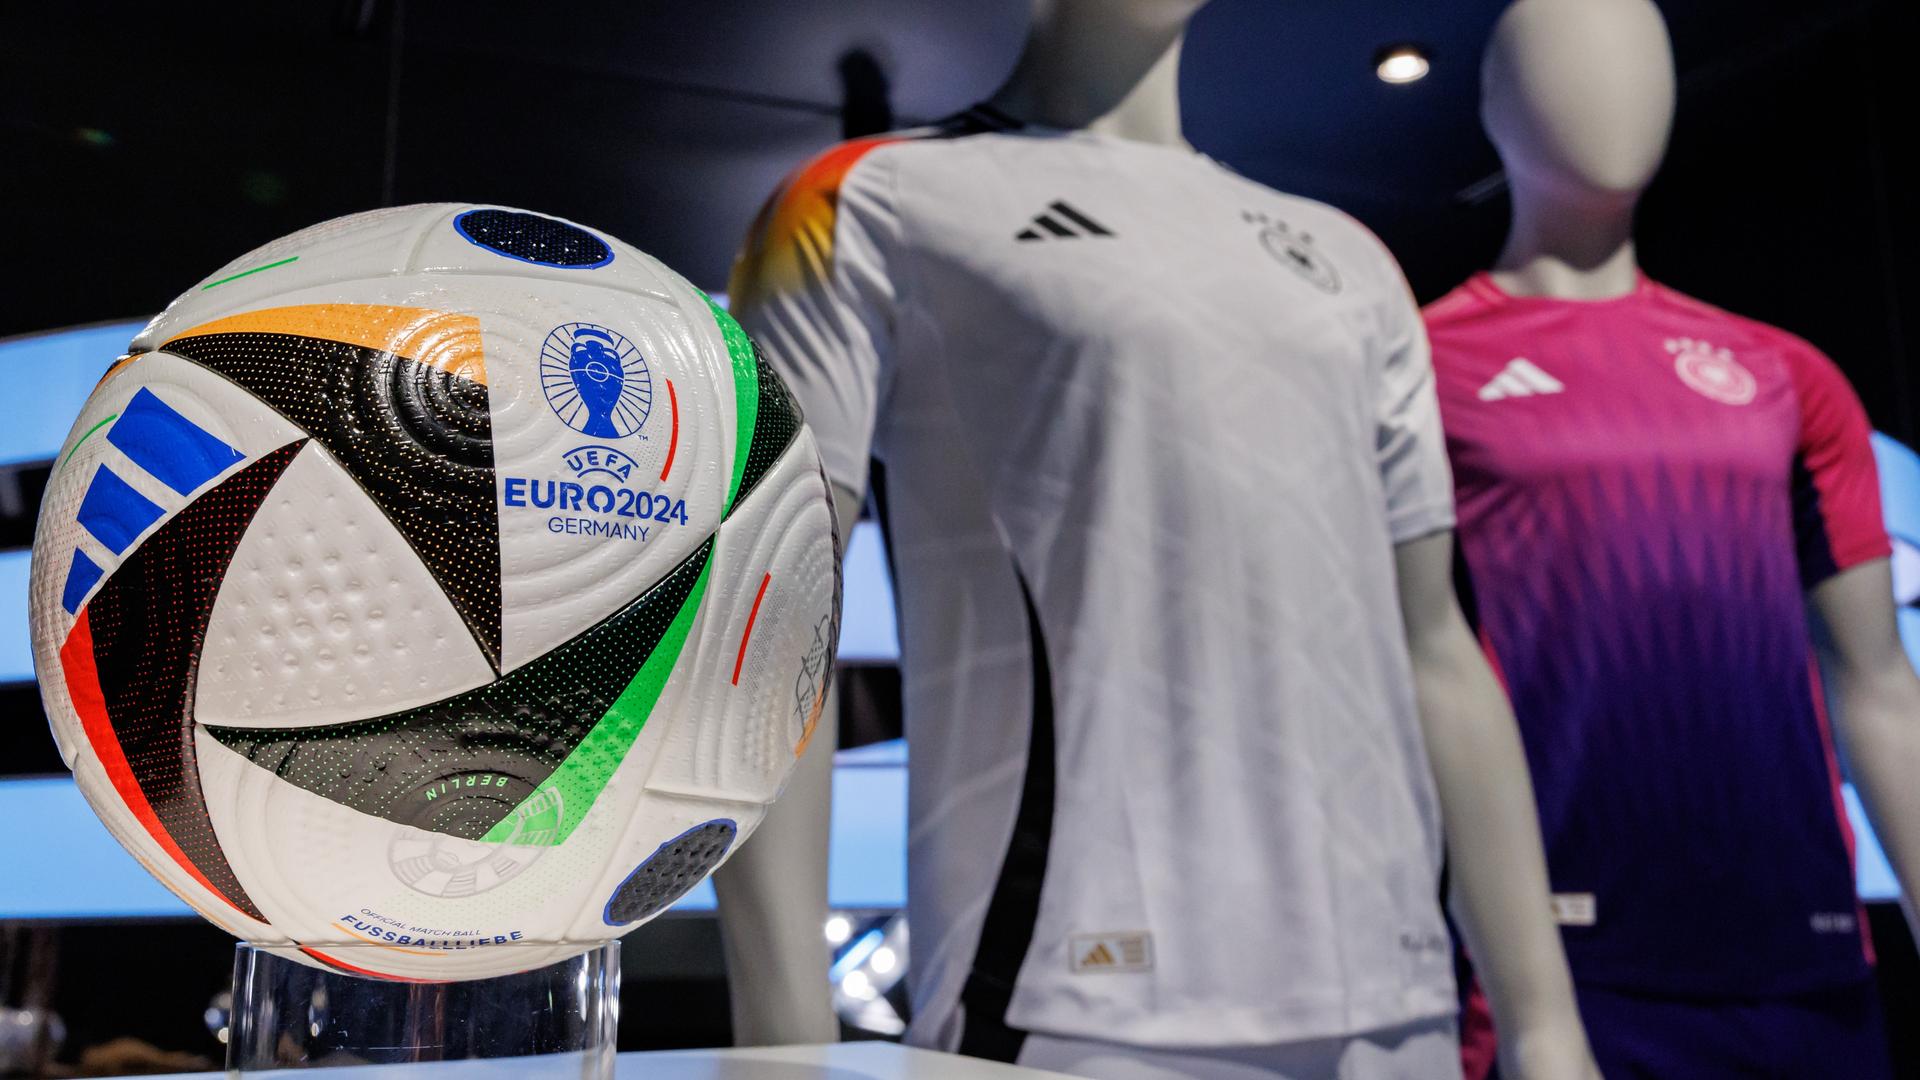 Die offiziellen Trikots der deutschen Fußball-Nationalmannschaft für die kommende Fußball-Europameisterschaft 2024 und der offizielle Spielball.